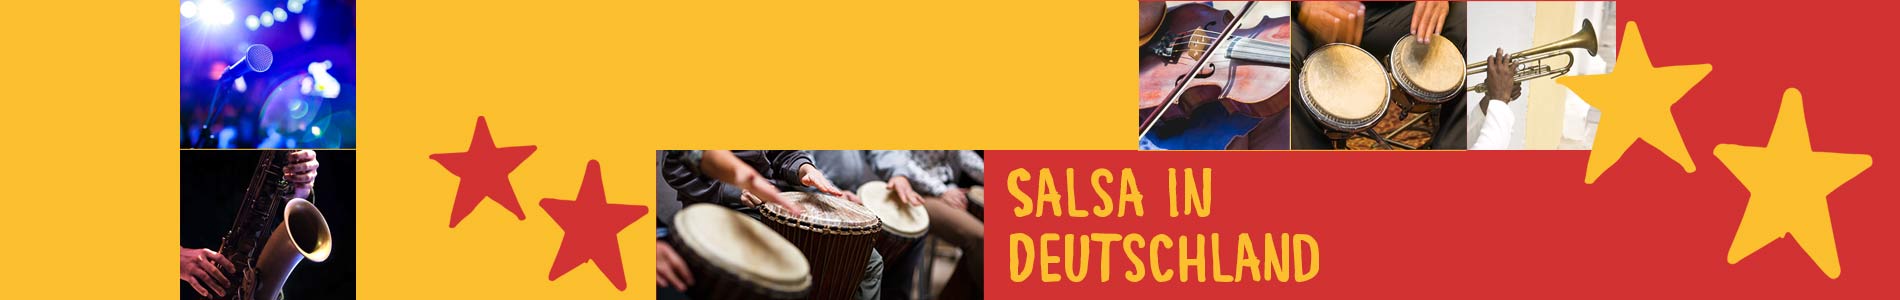 Salsa in Deuerling – Salsa lernen und tanzen, Tanzkurse, Partys, Veranstaltungen